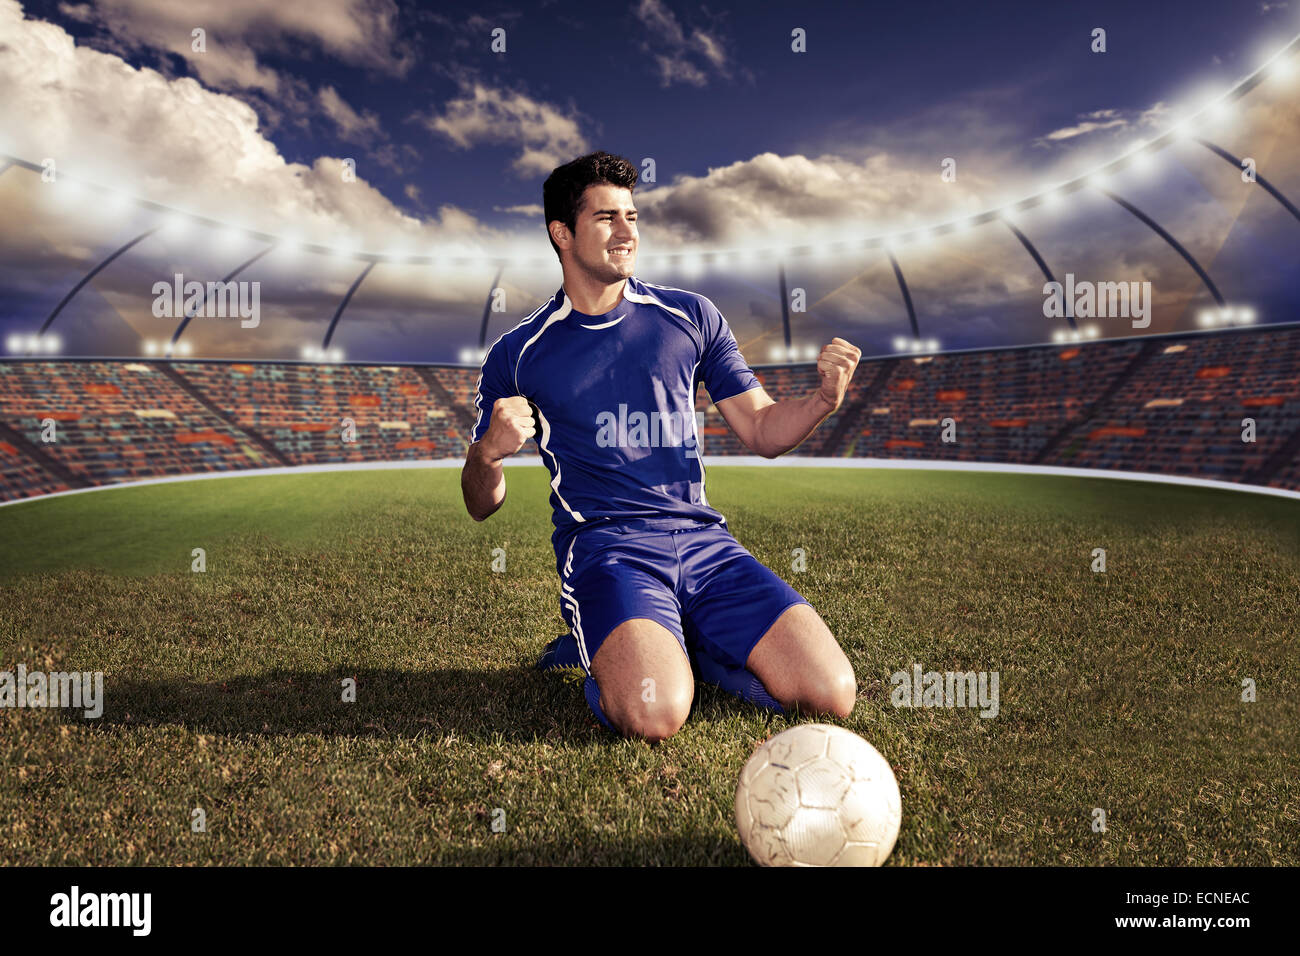 Soccer ou de football player sur le terrain Banque D'Images